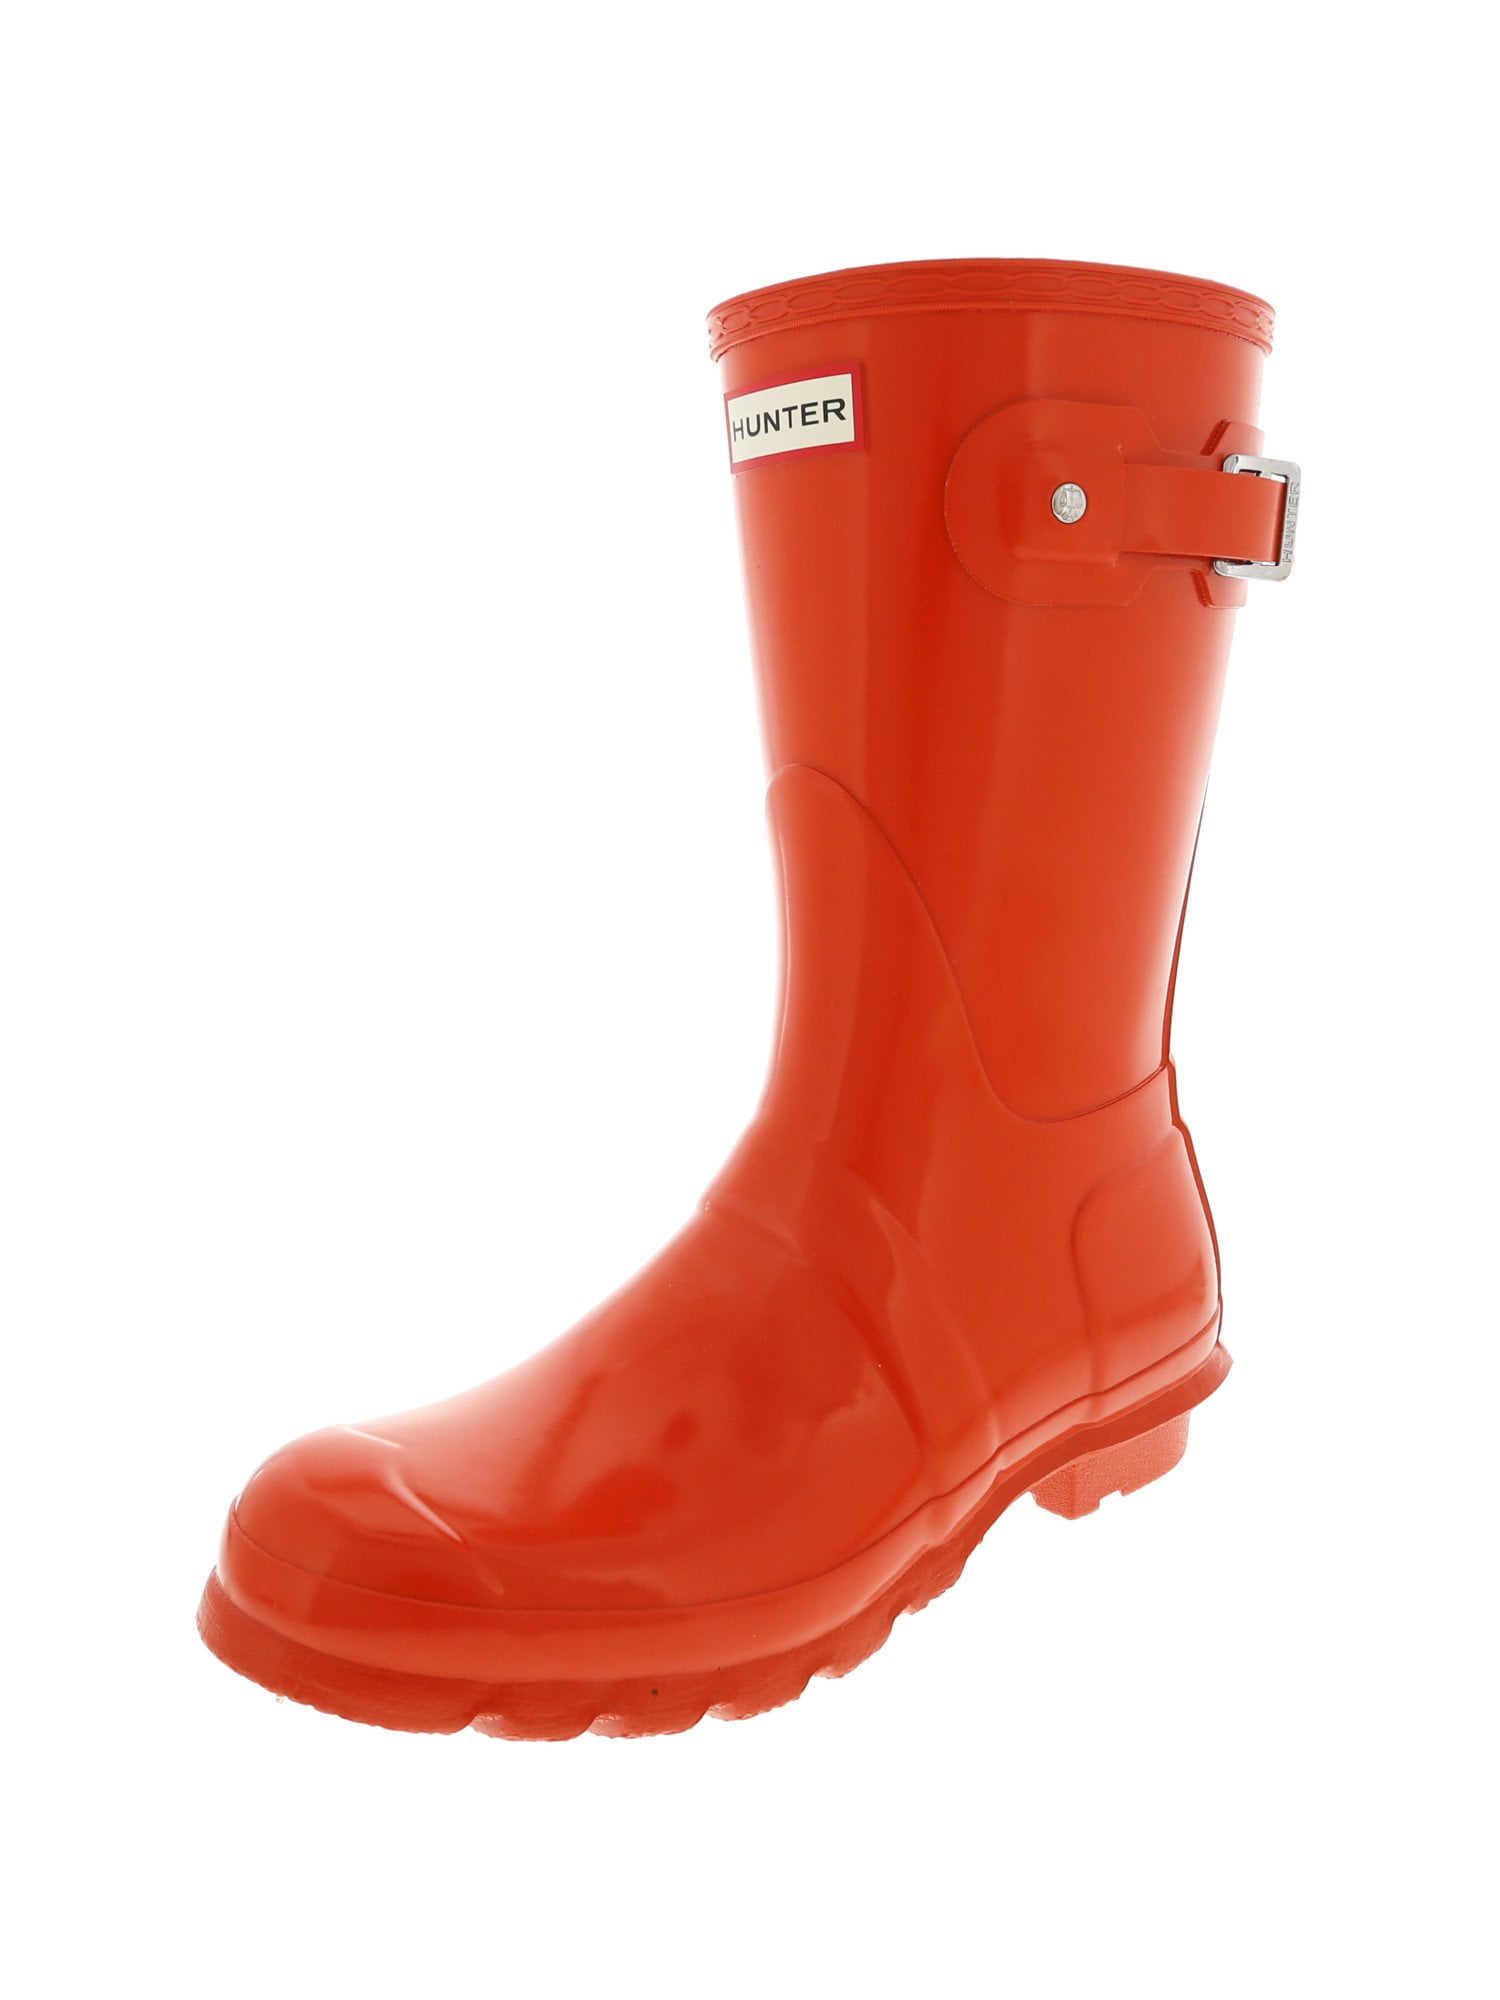 walmart hunter rain boots